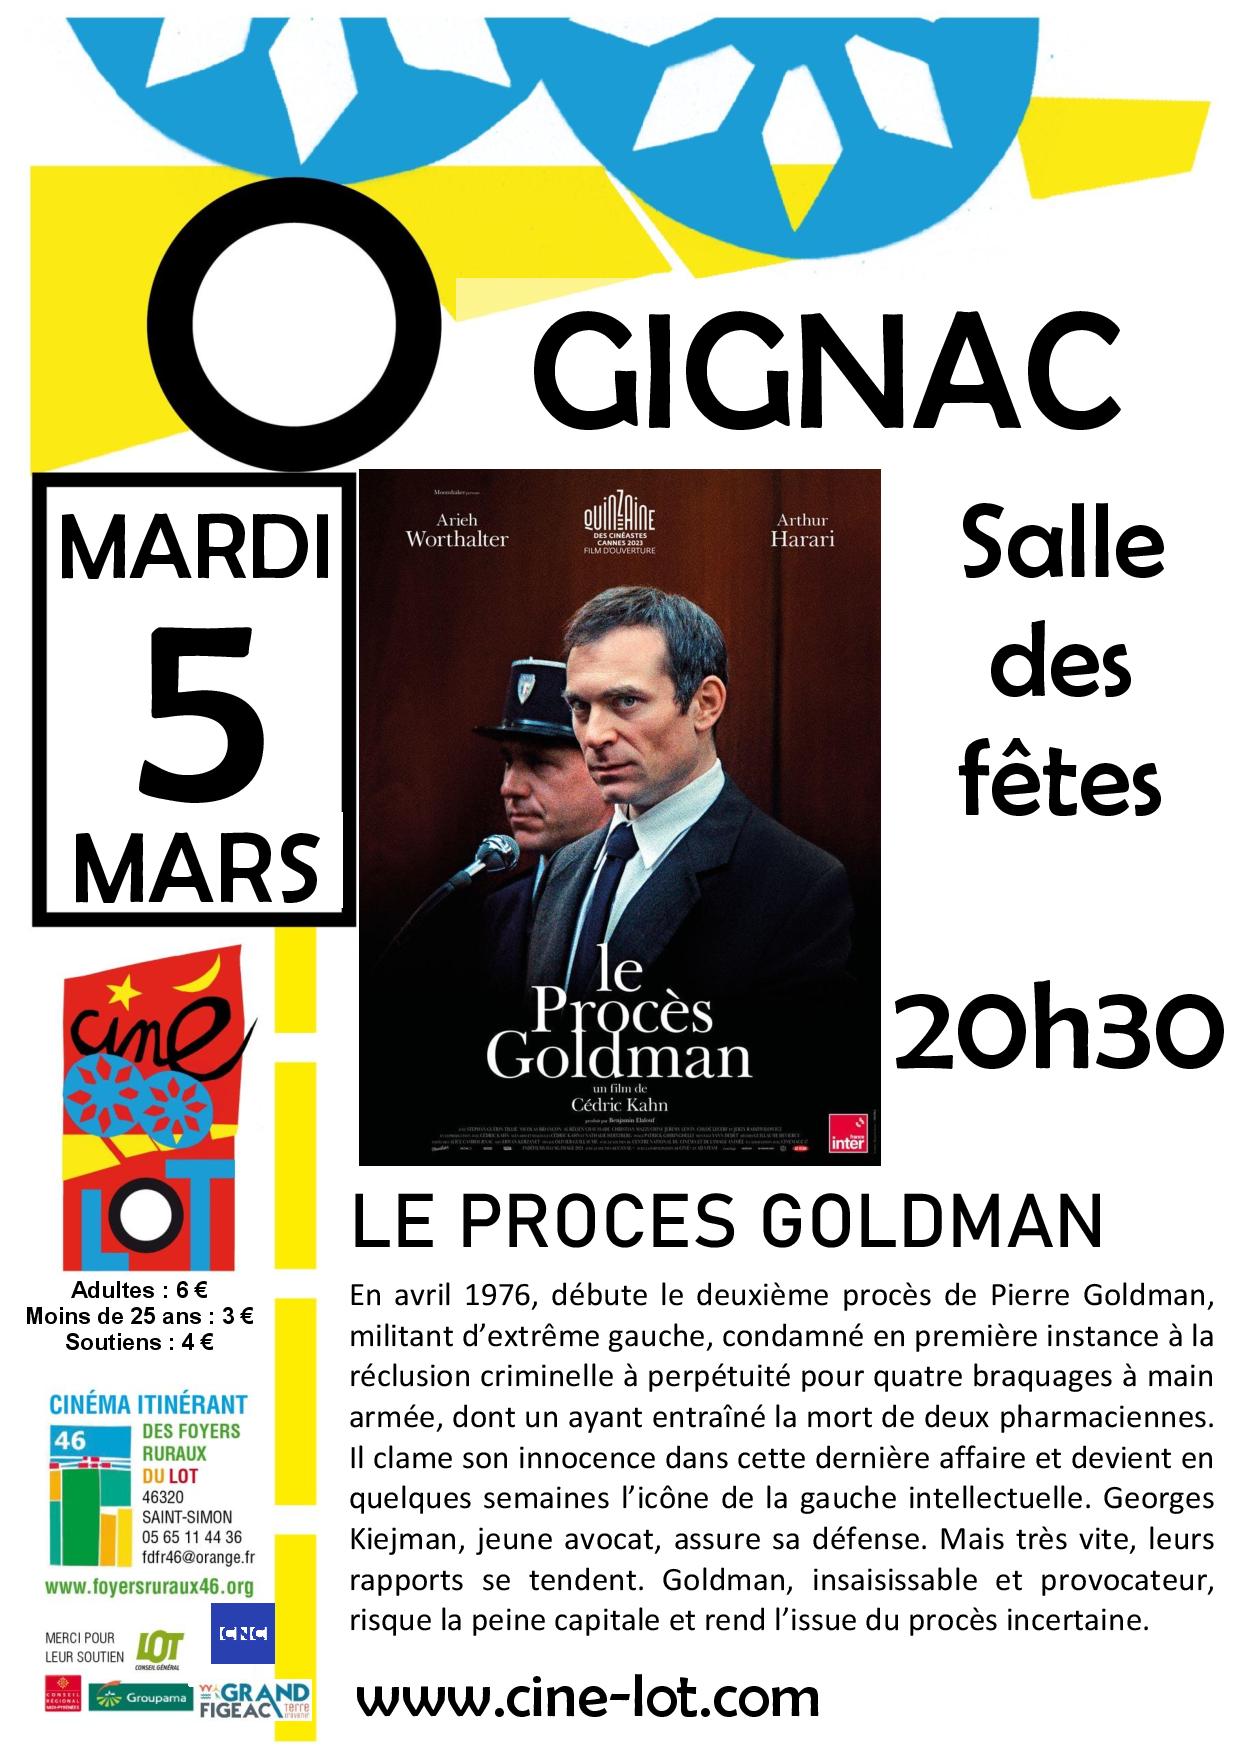 Cinéma “LE PROCÈS GOLDMAN” de Cédric Kahn